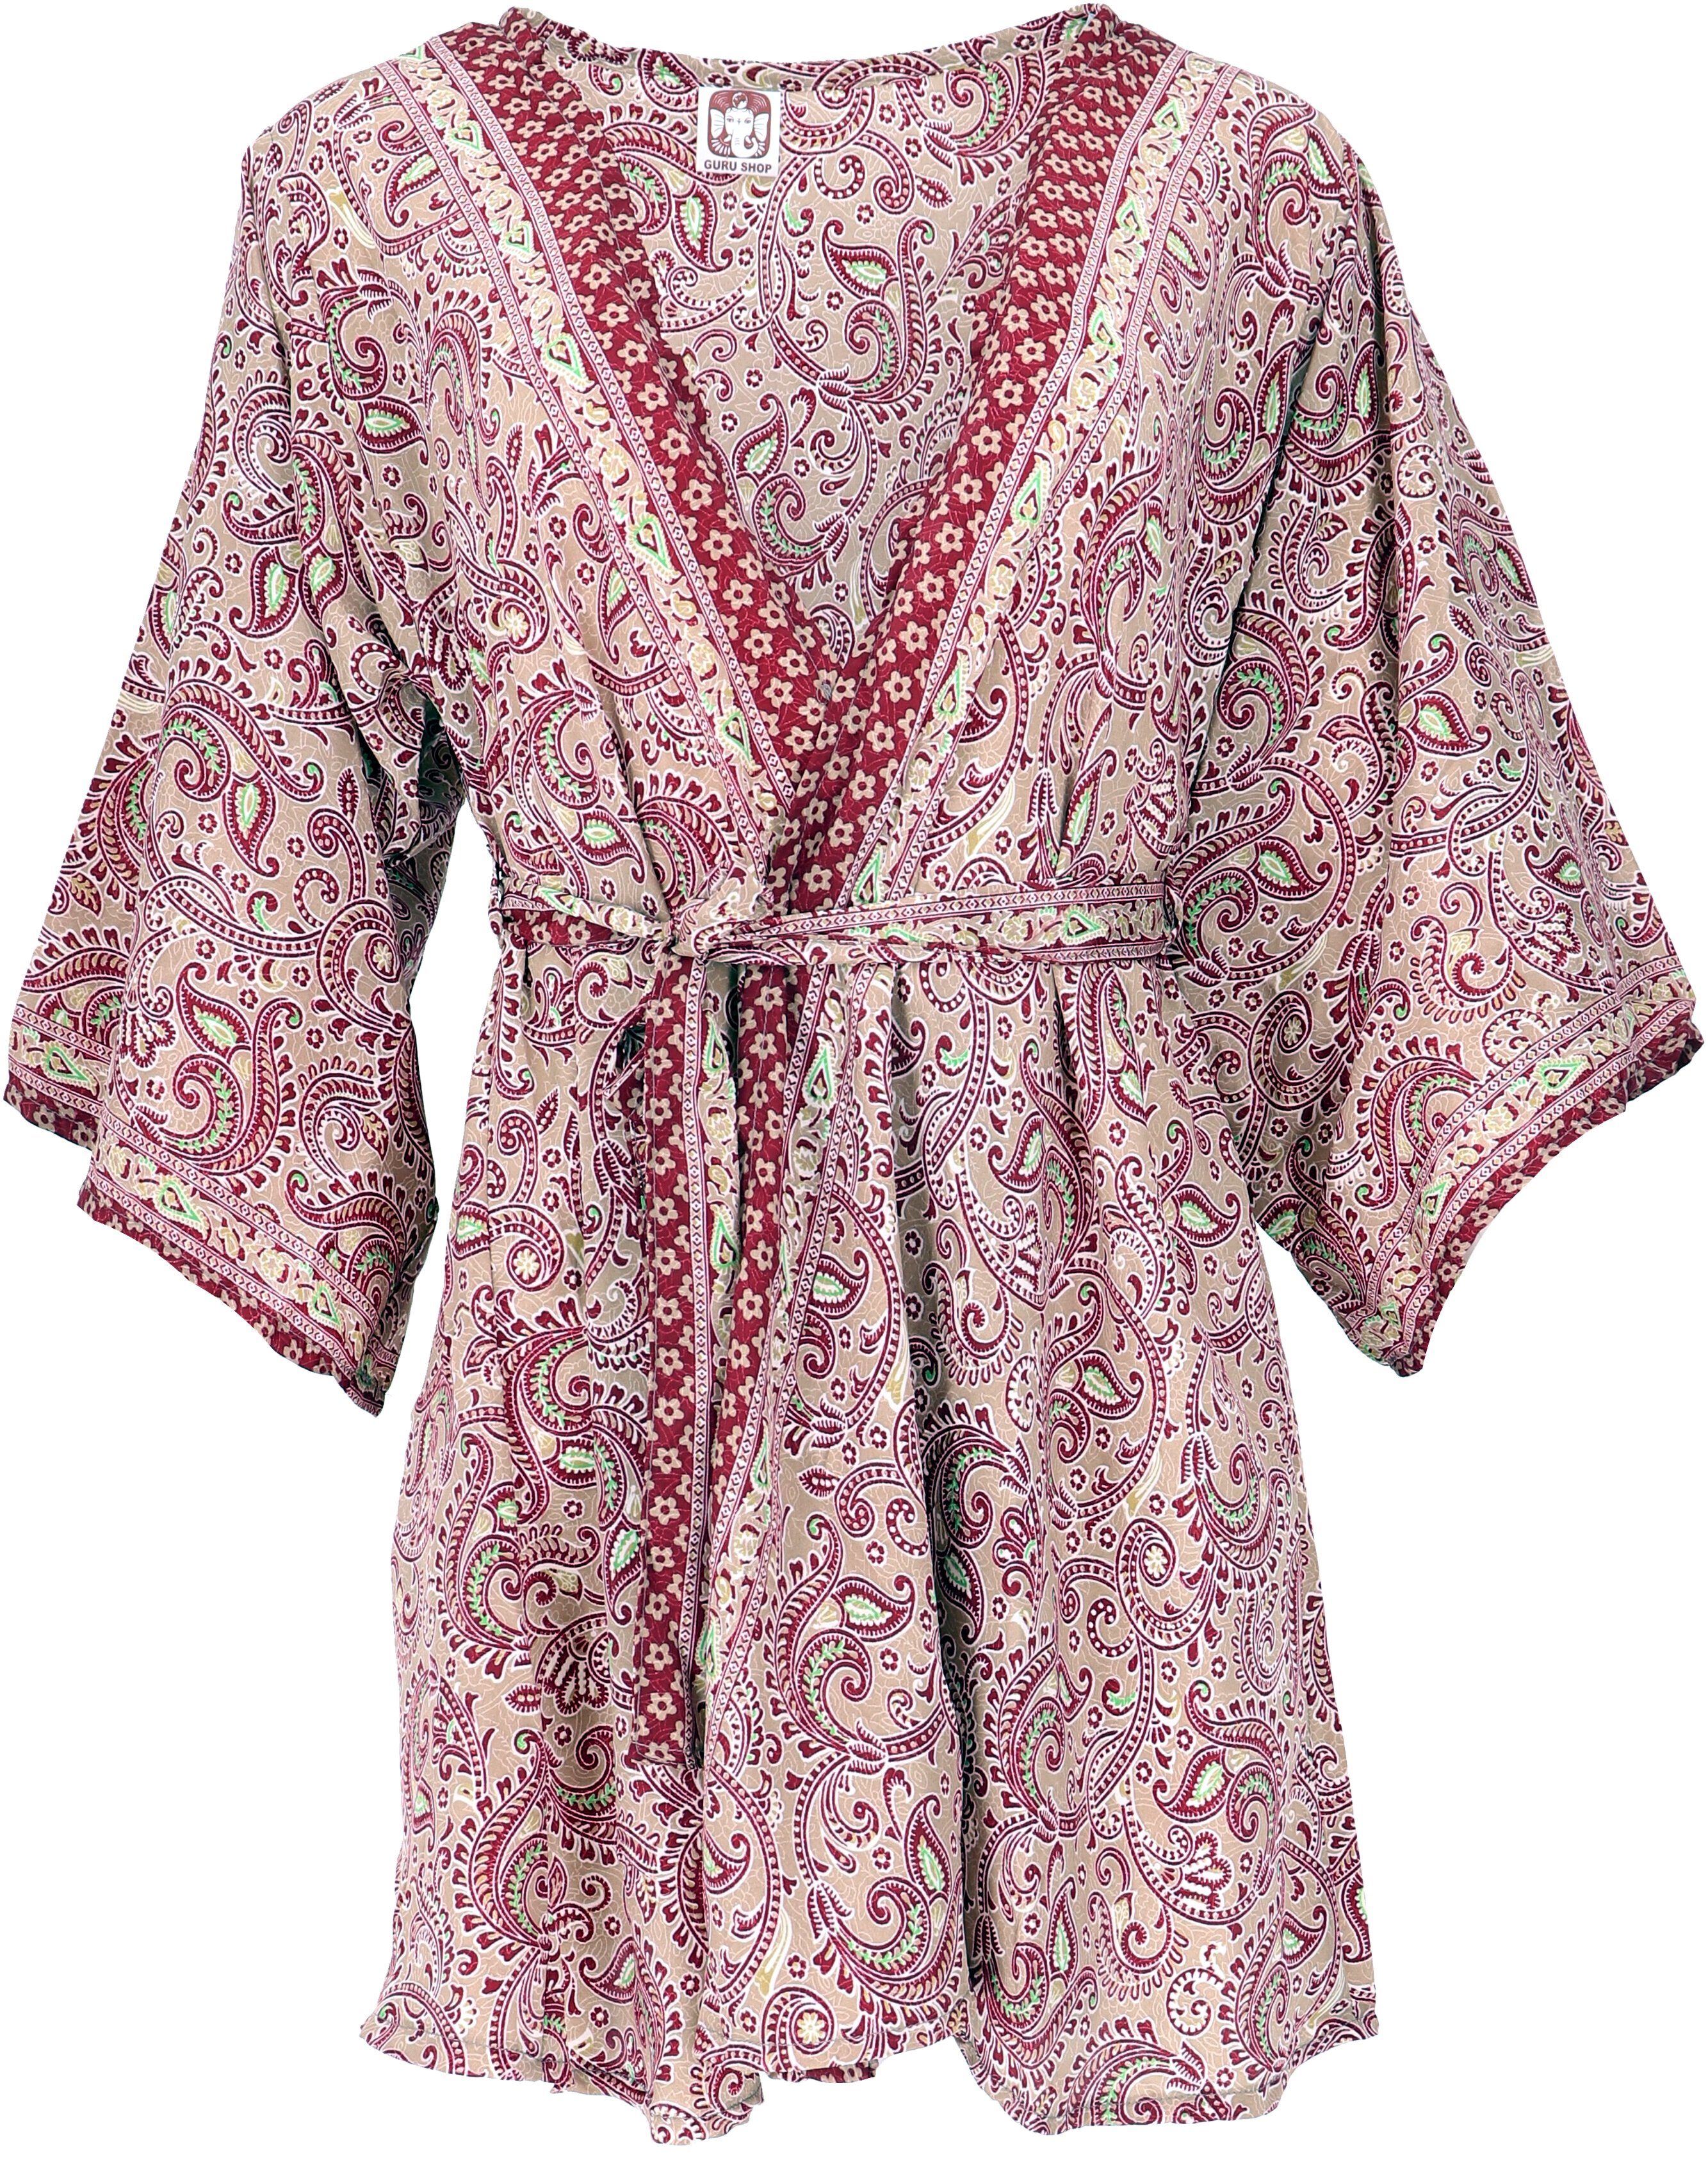 Guru-Shop Kimono Kimonokleid.., Kimonojäckchen, Kimono, Boho alternative kurzer beige/bordeaux Bekleidung